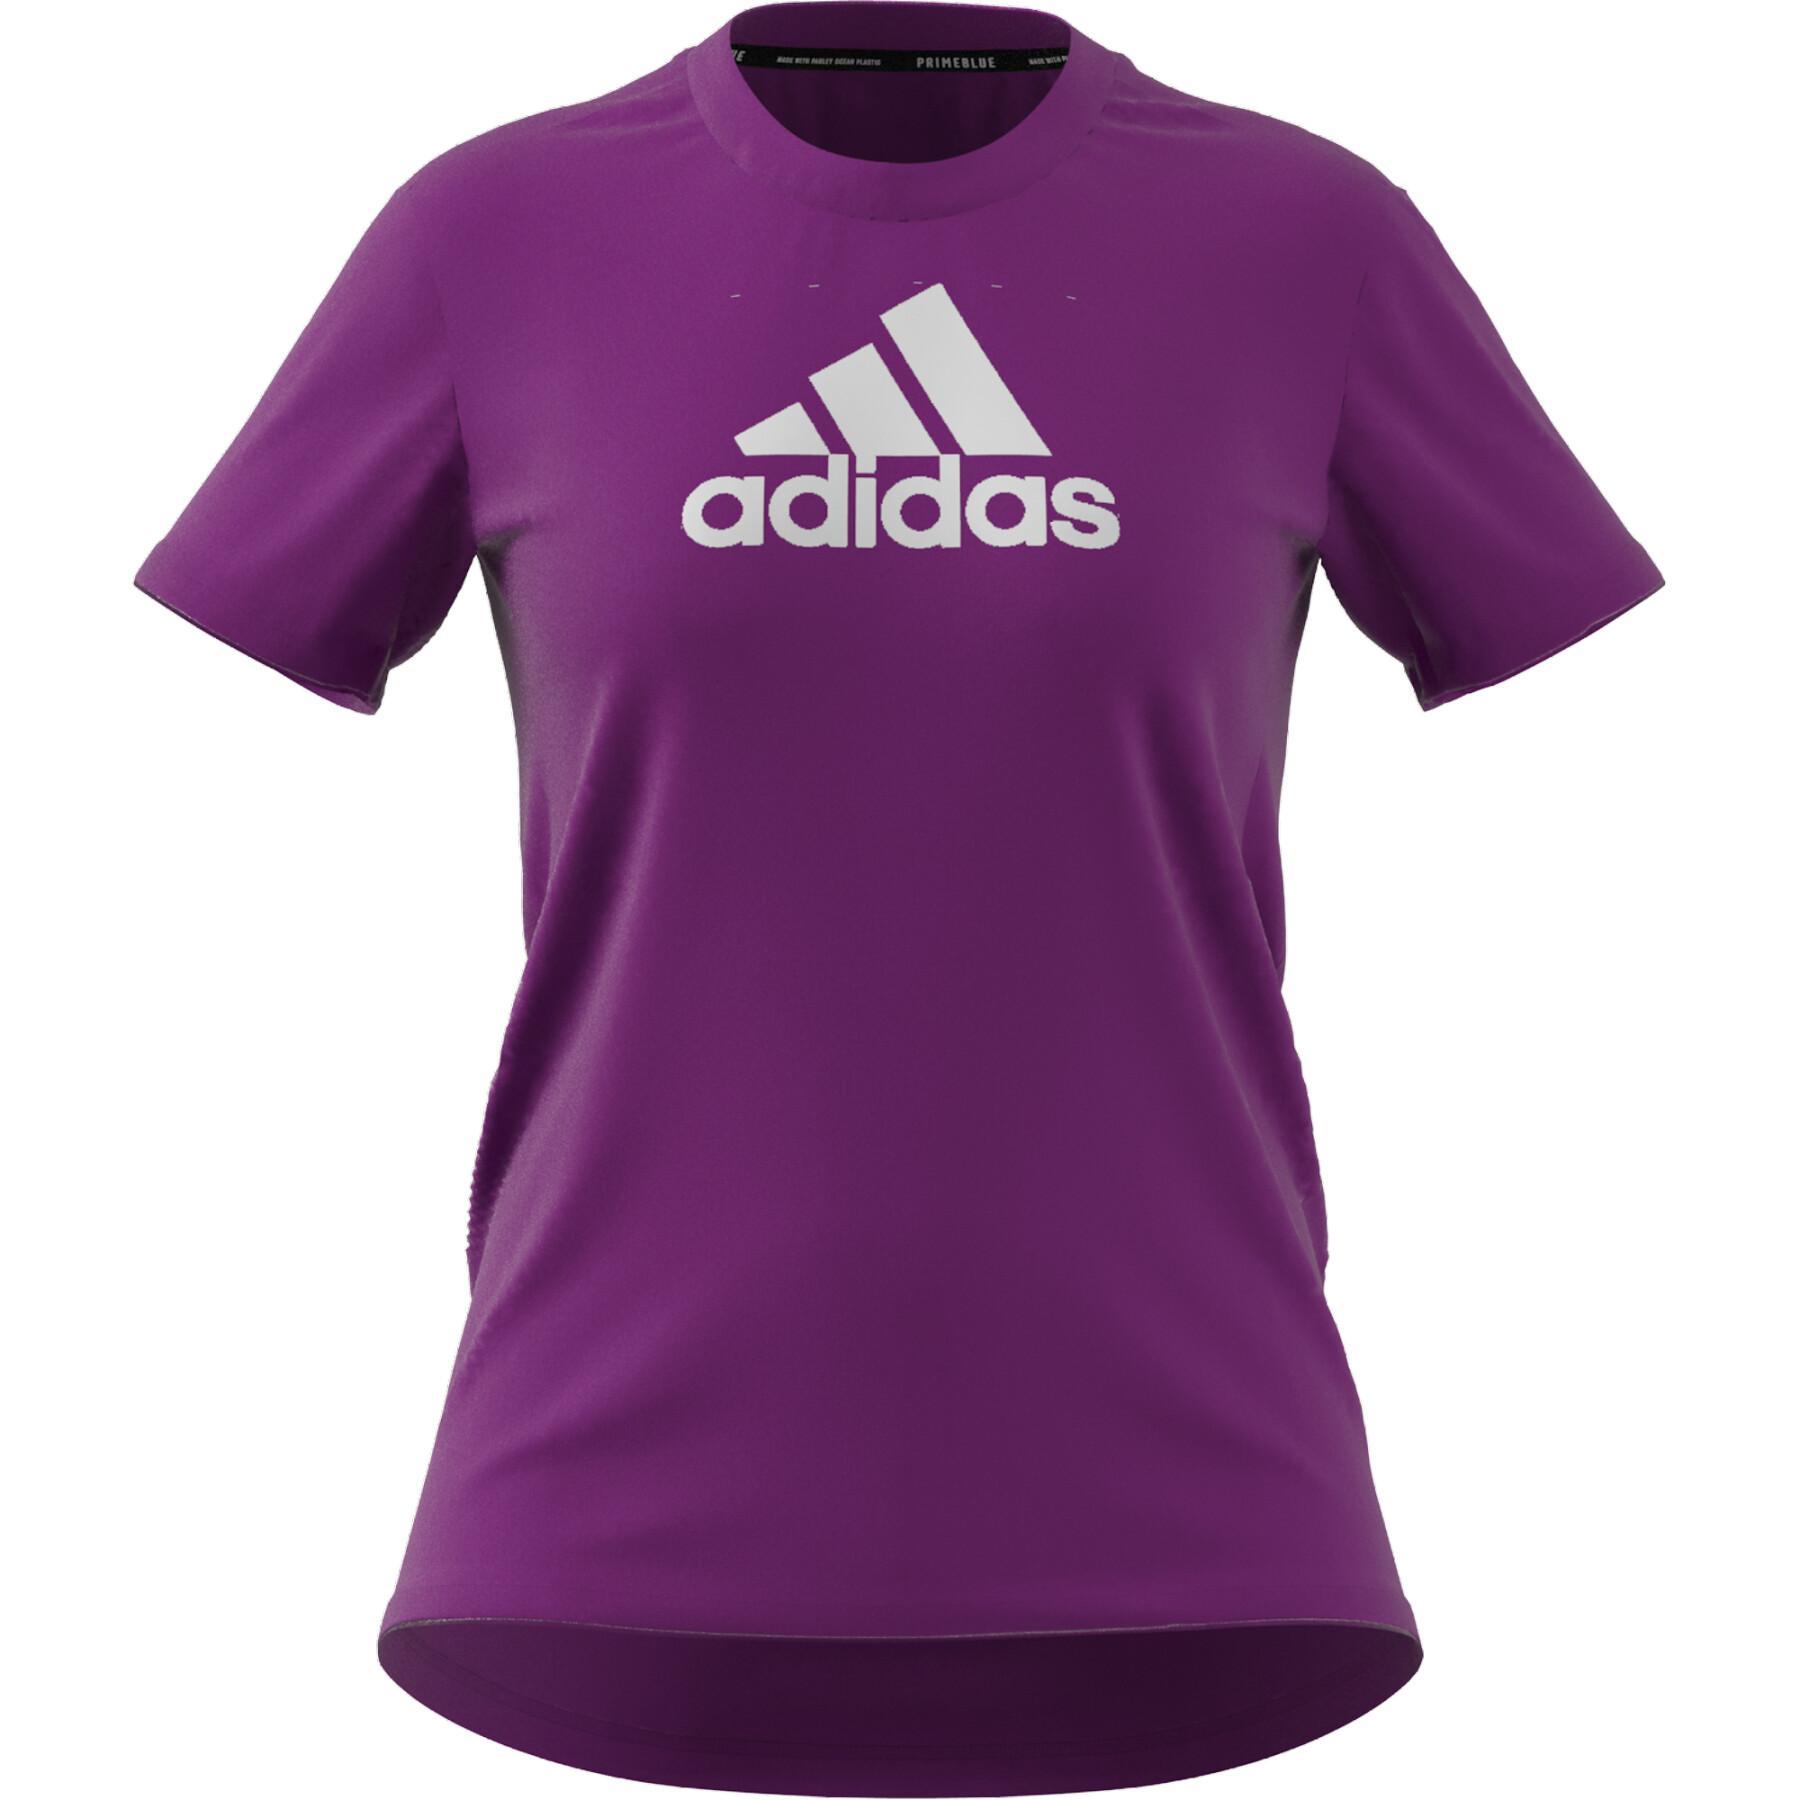 Camiseta de mujer adidas Primeblue Designed 2 Move Logo Sport